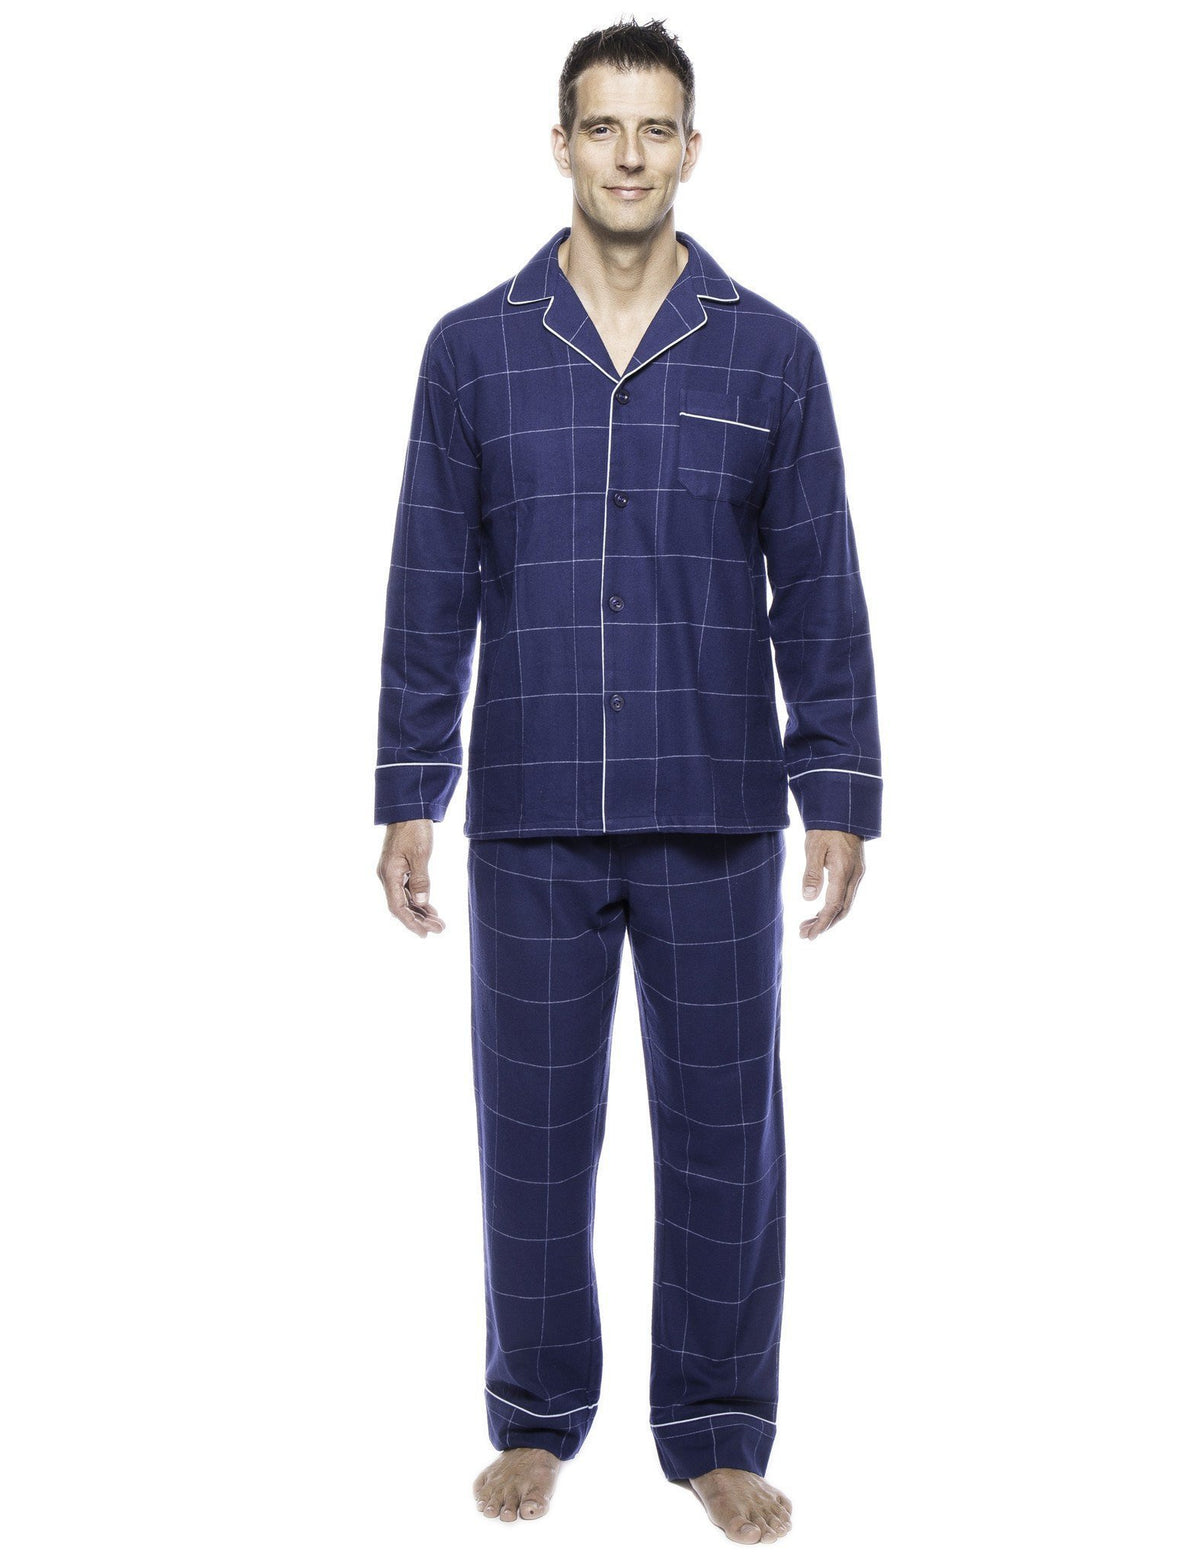 Box Packaged Men's Premium 100% Cotton Flannel Pajama Sleepwear Set - Windowpane Checks Dark Blue